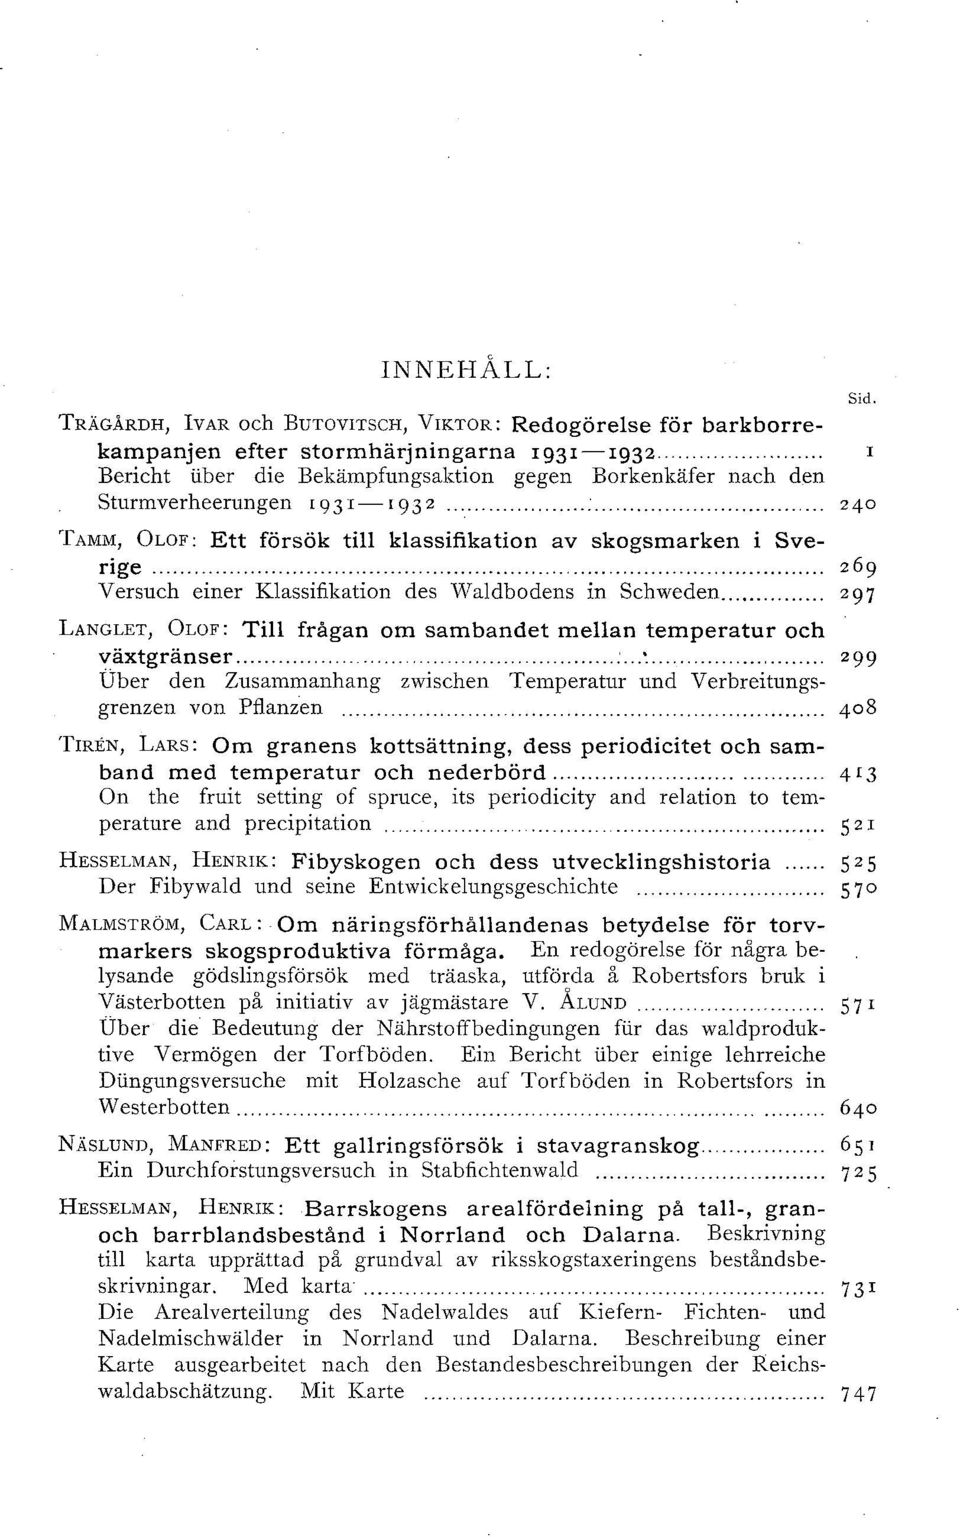 .. 269 Versuch einer Klassifikation des Waldbodens in Schweden... 297 LANGLET, OLOF: Till frågan om sambandet mellan temperatur och växtgränser.